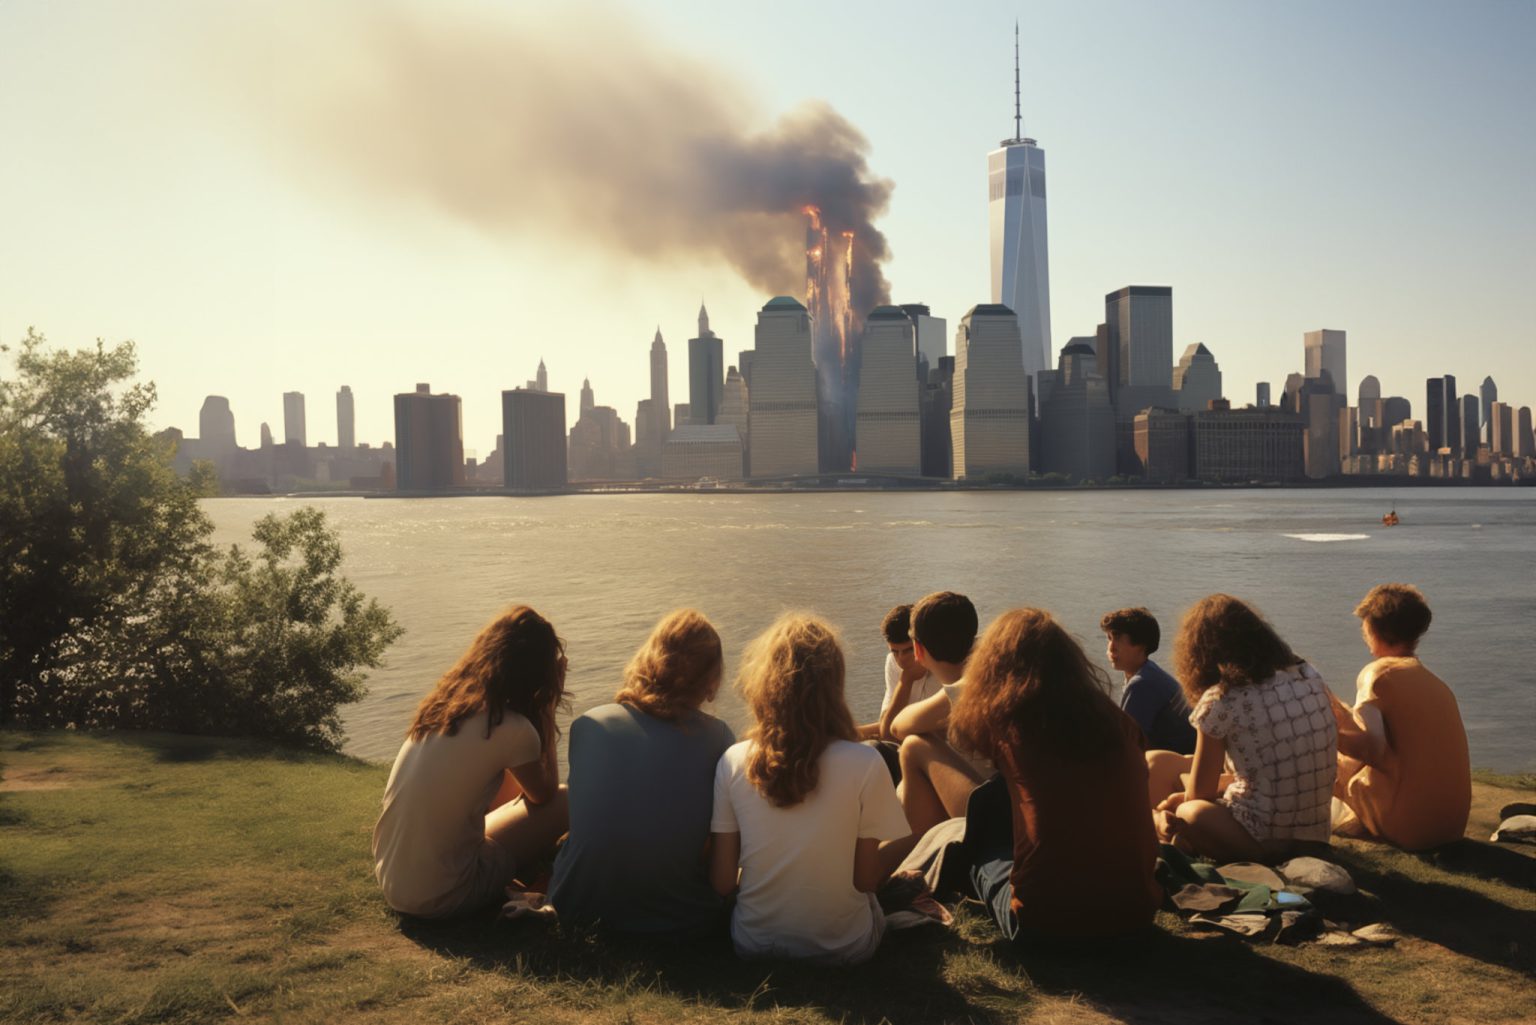 Eine Gruppe von Menschen sitzt auf einem grasbewachsenen Flussufer und beobachtet die Skyline einer Stadt in der Ferne, aus einem der hohen Gebäude steigt Rauch auf.